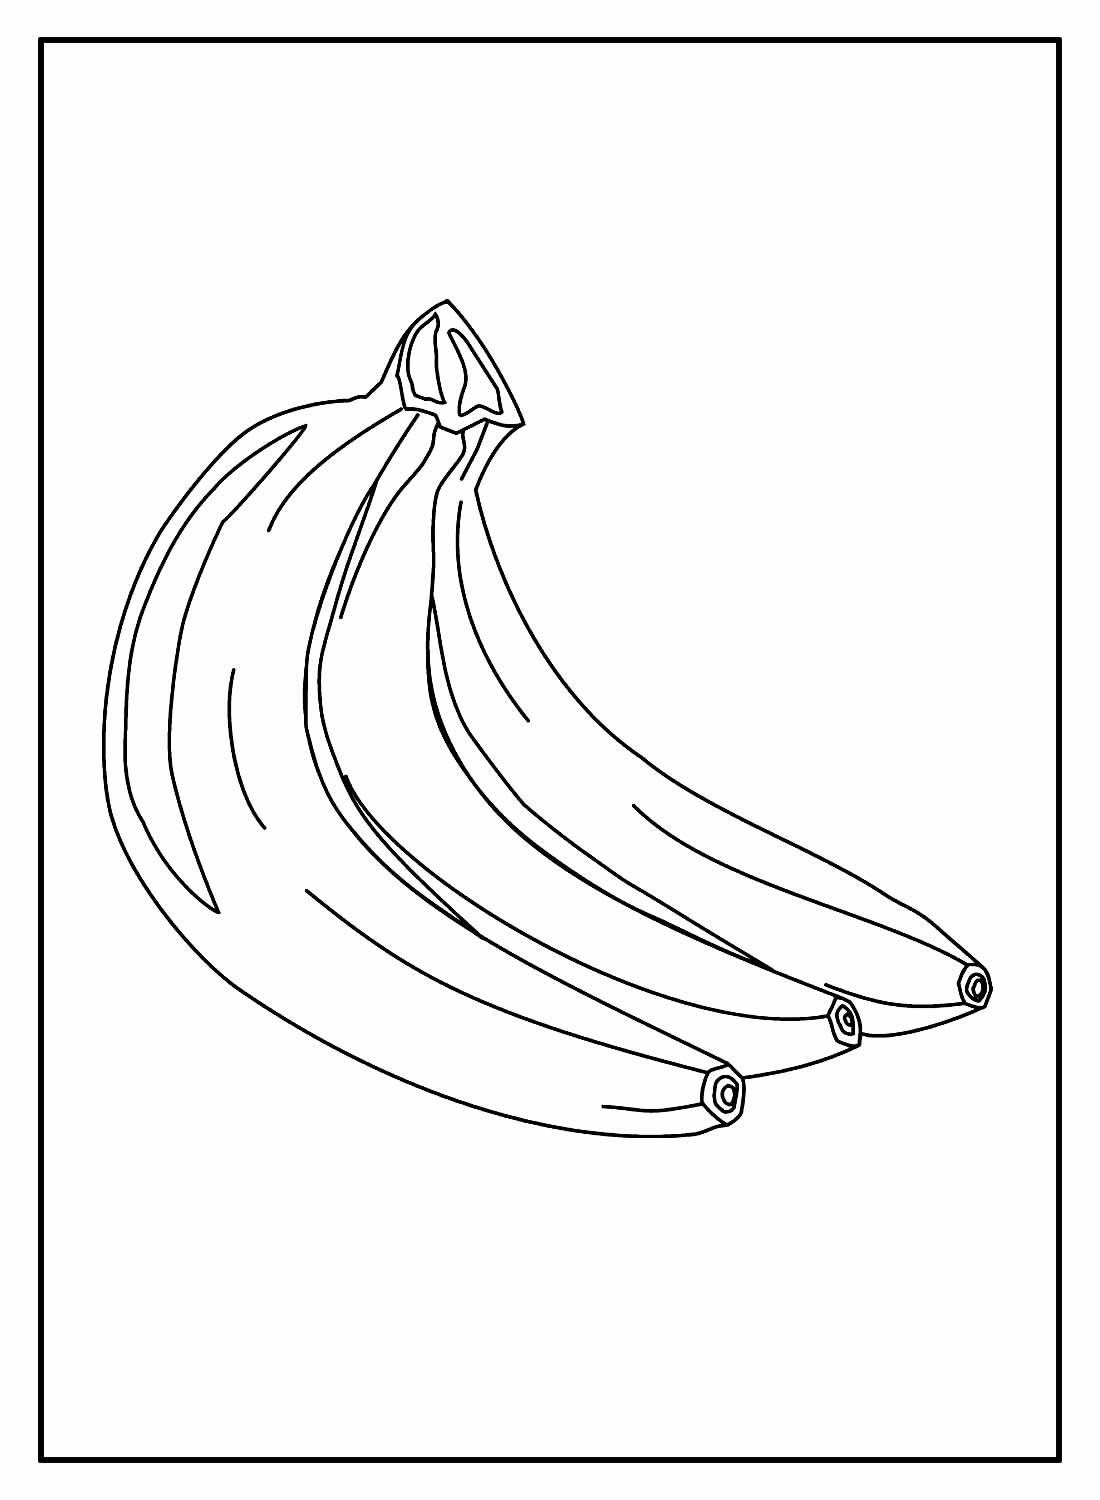 Рисование банана для детей